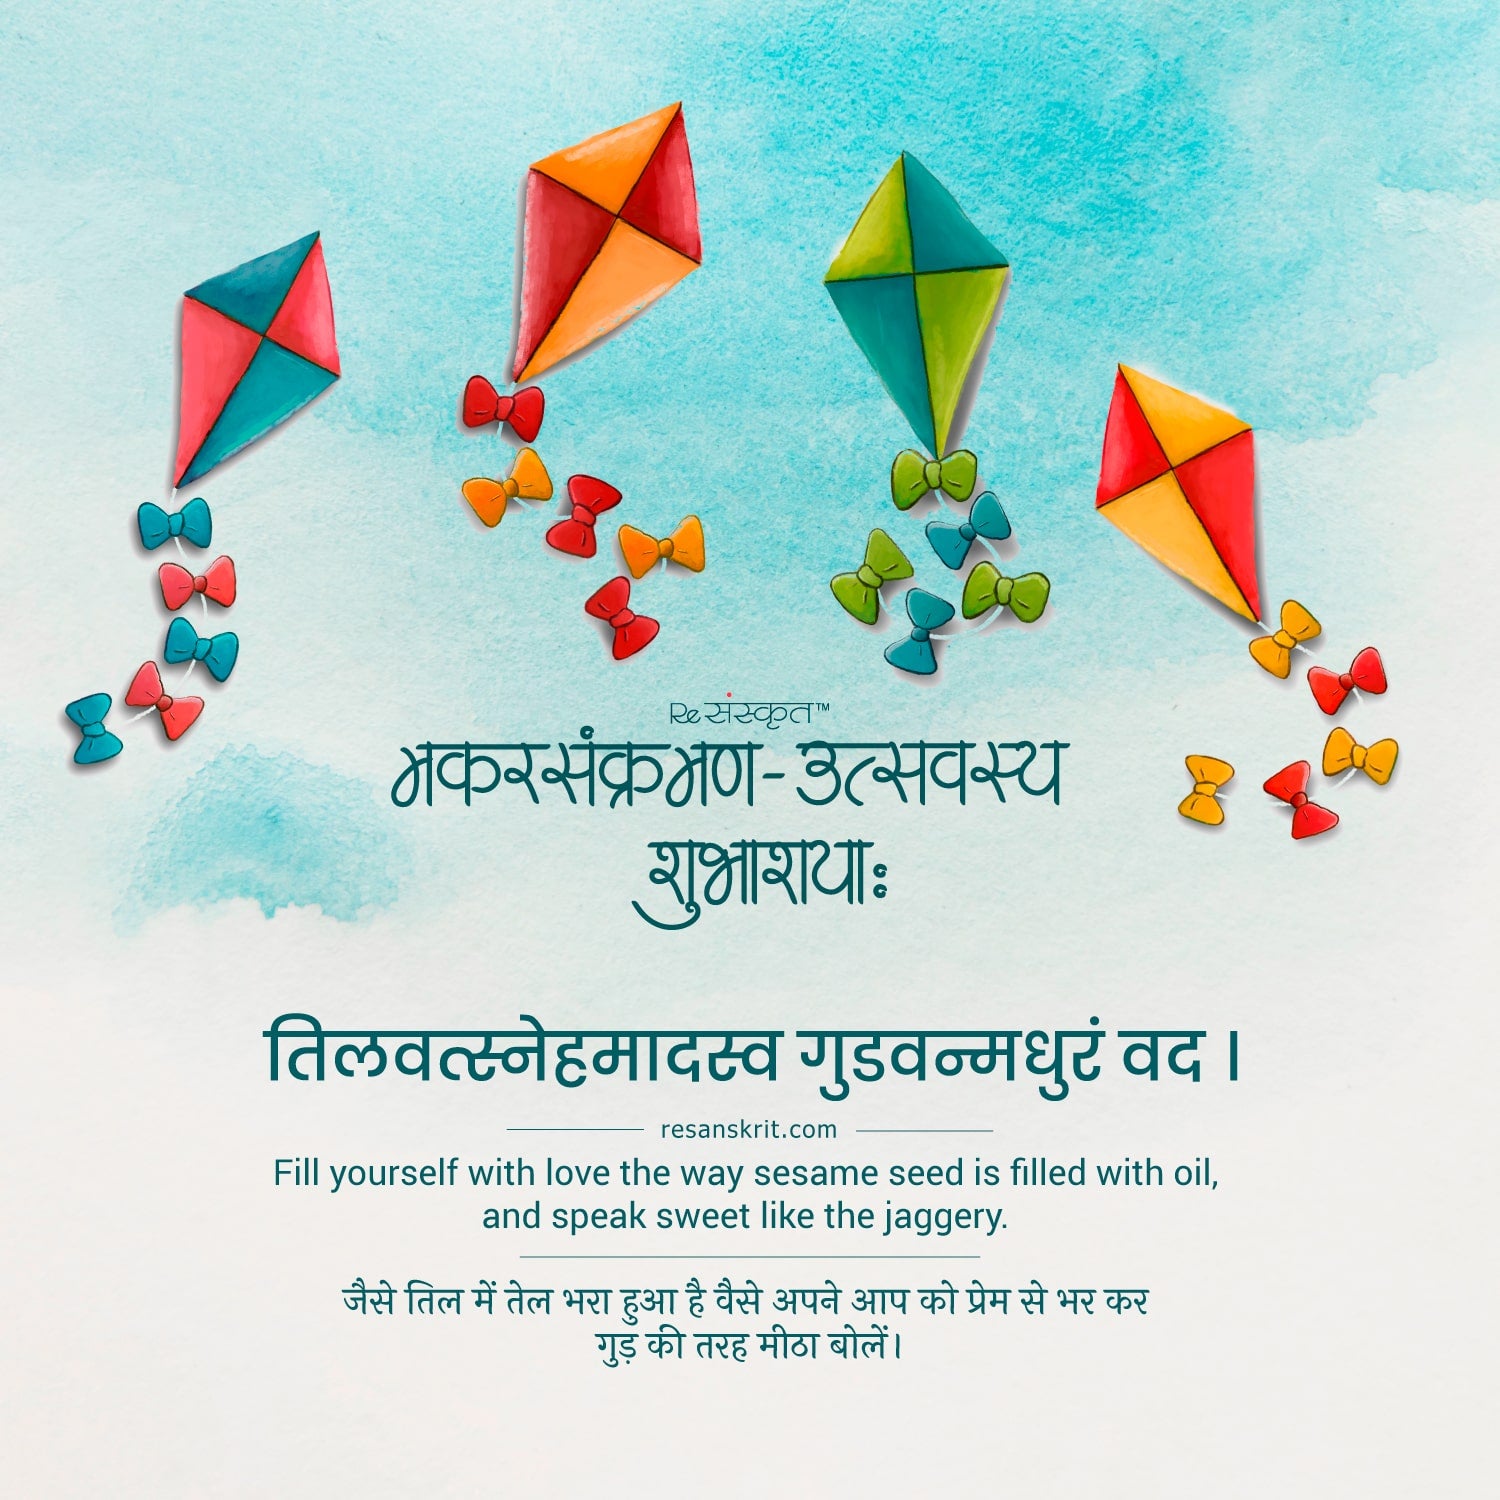 Sanskrit quote for Makar Sankranti